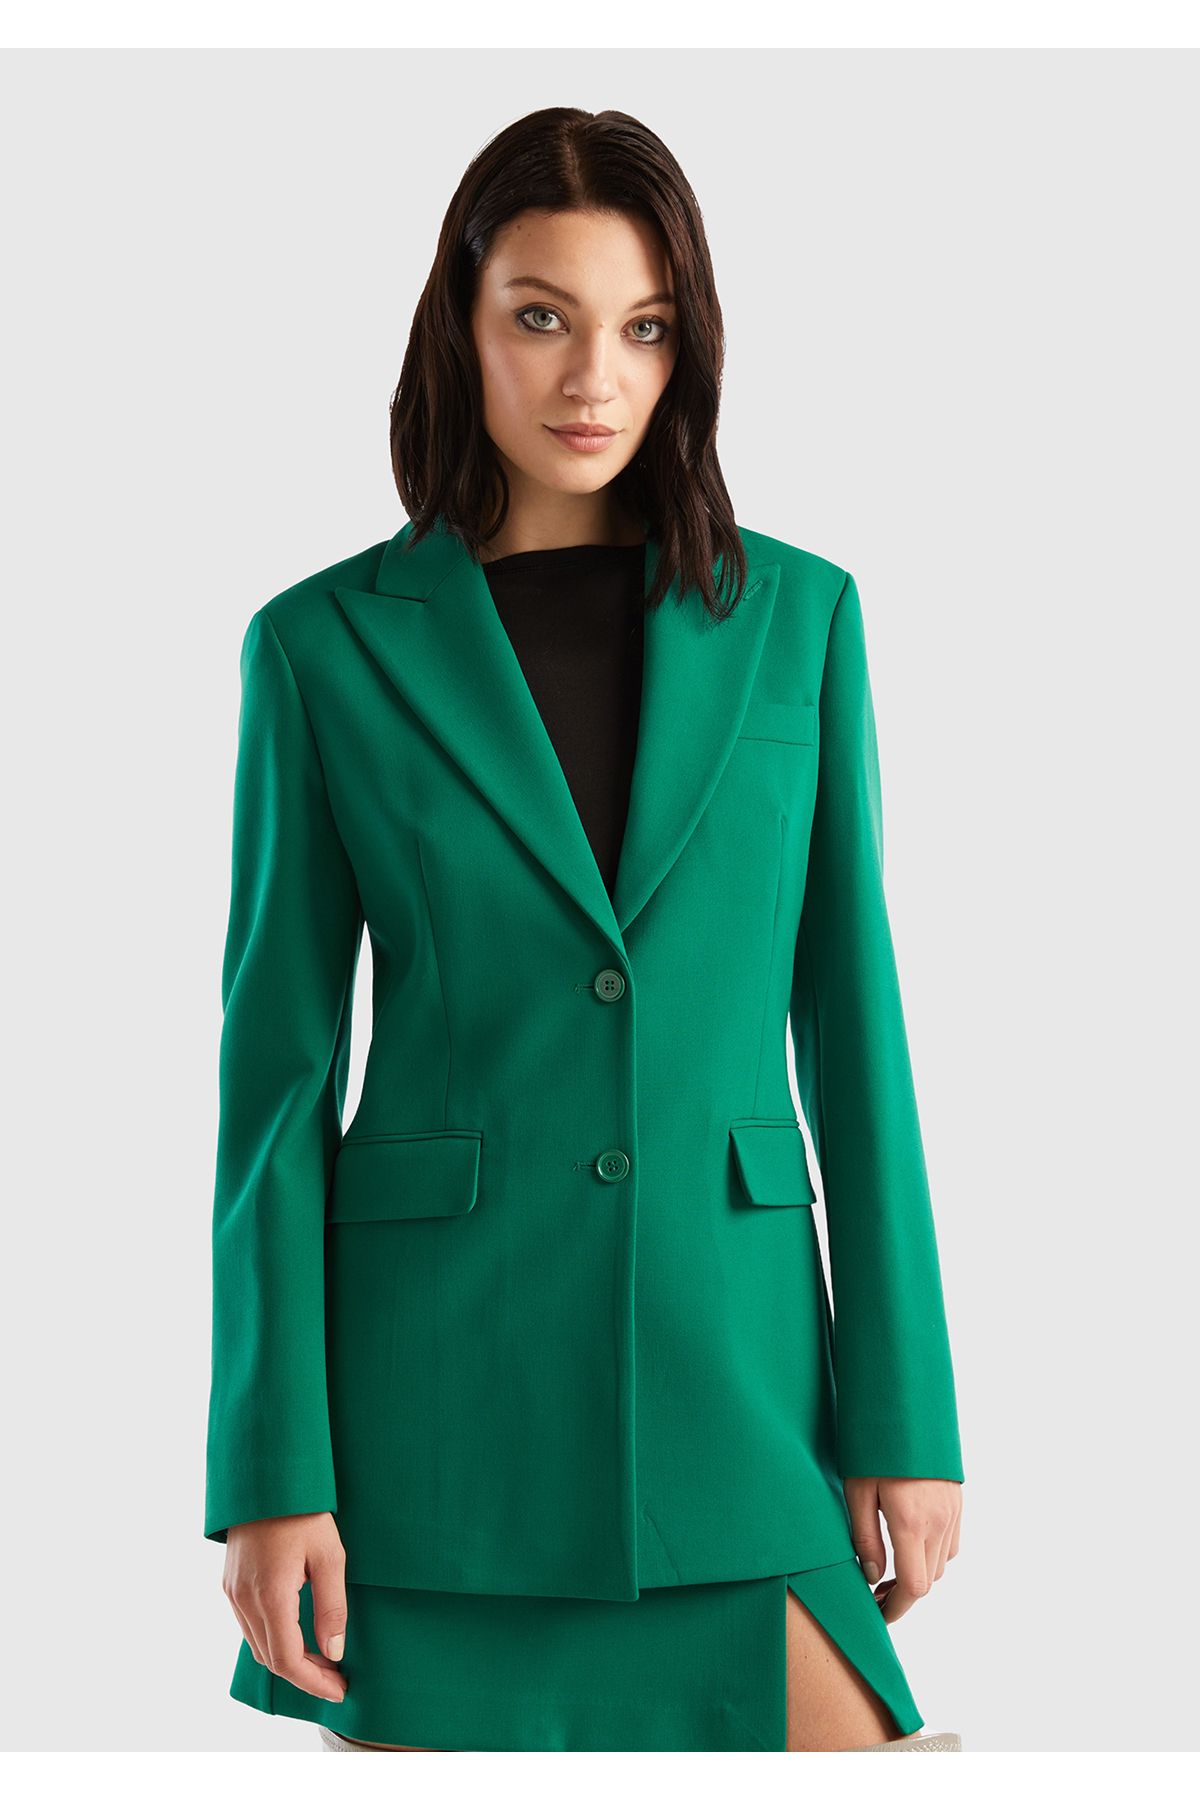 United Colors of Benetton Kadın Yeşil Çift Düğmeli Ceket